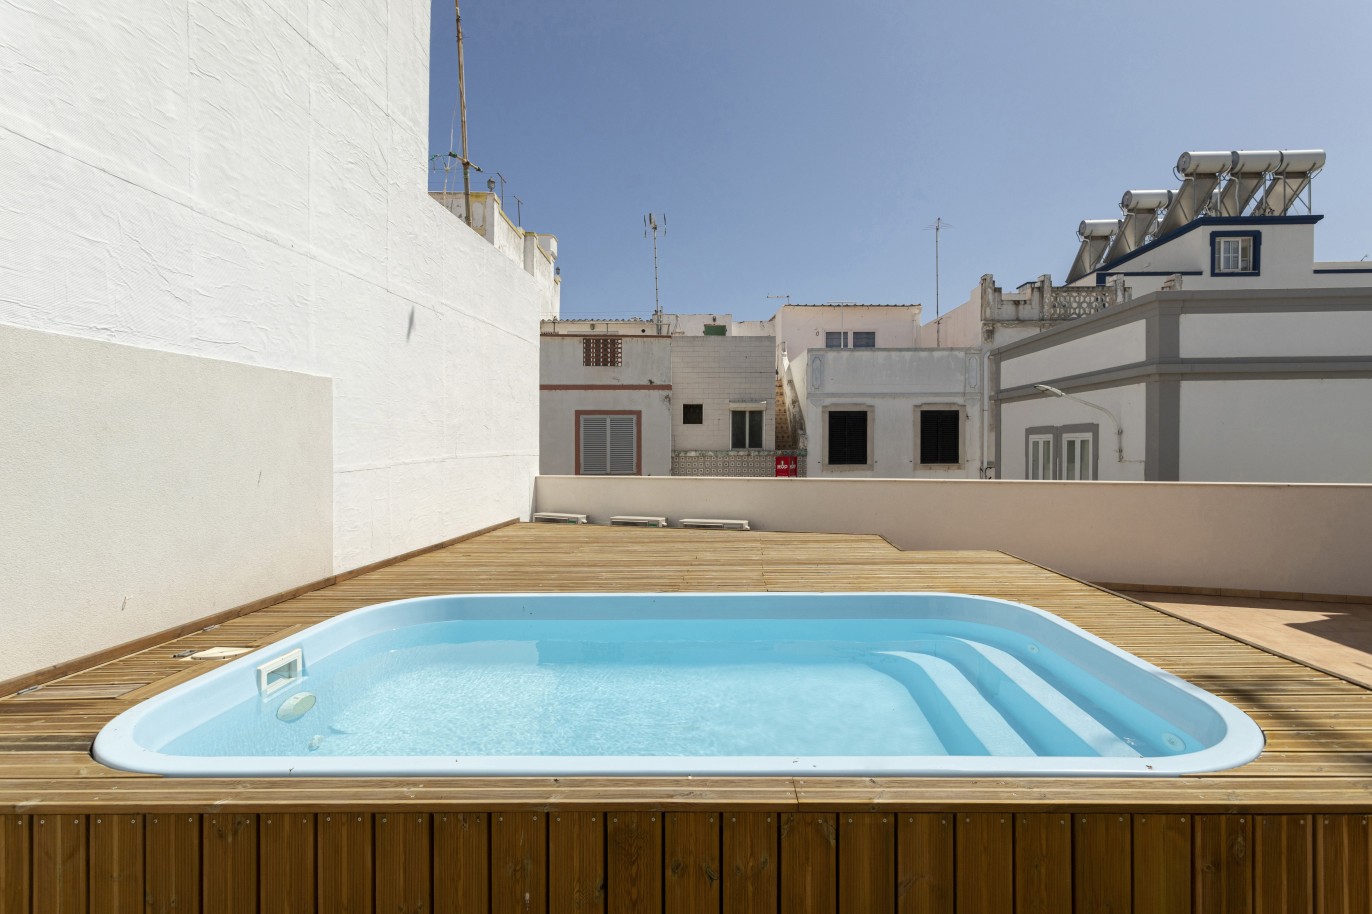 Renovierte Villa mit 3 Schlafzimmern zu verkaufen in der Innenstadt von Olhão, Algarve_227458